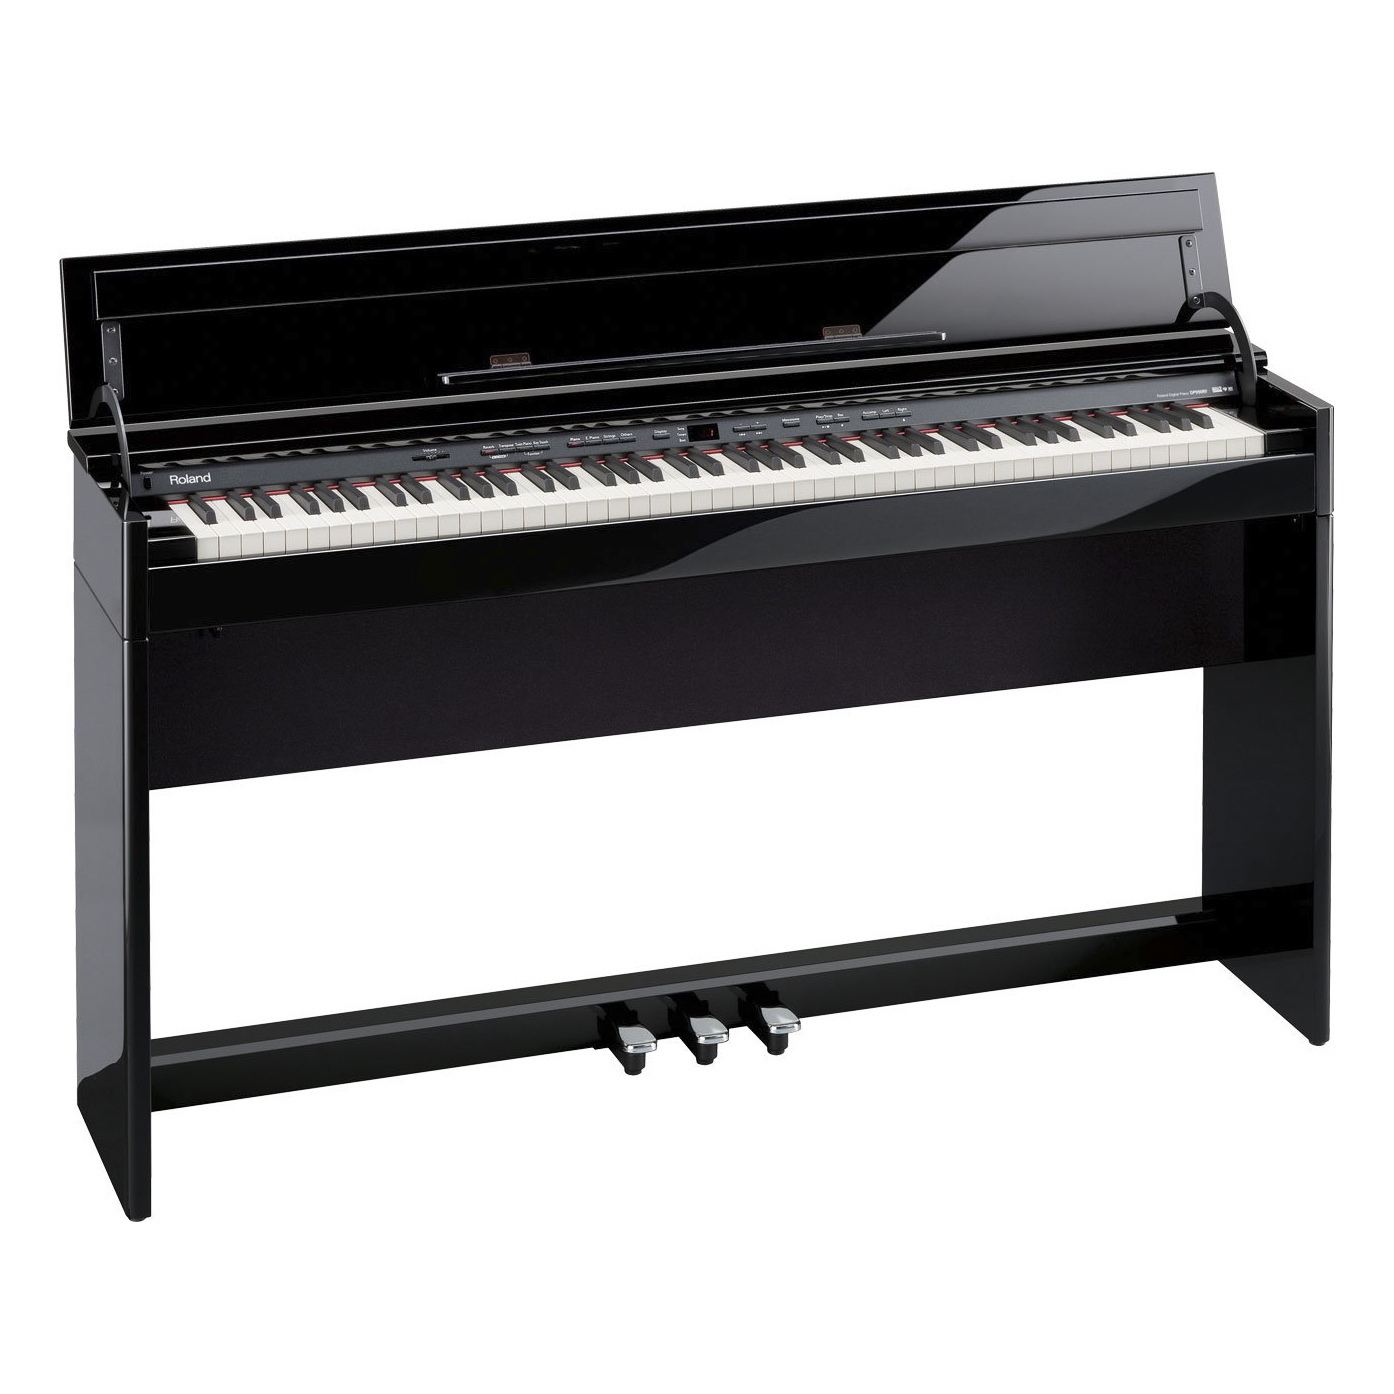 Piano điện Roland DP-990 RF (đã qua sử dụng)